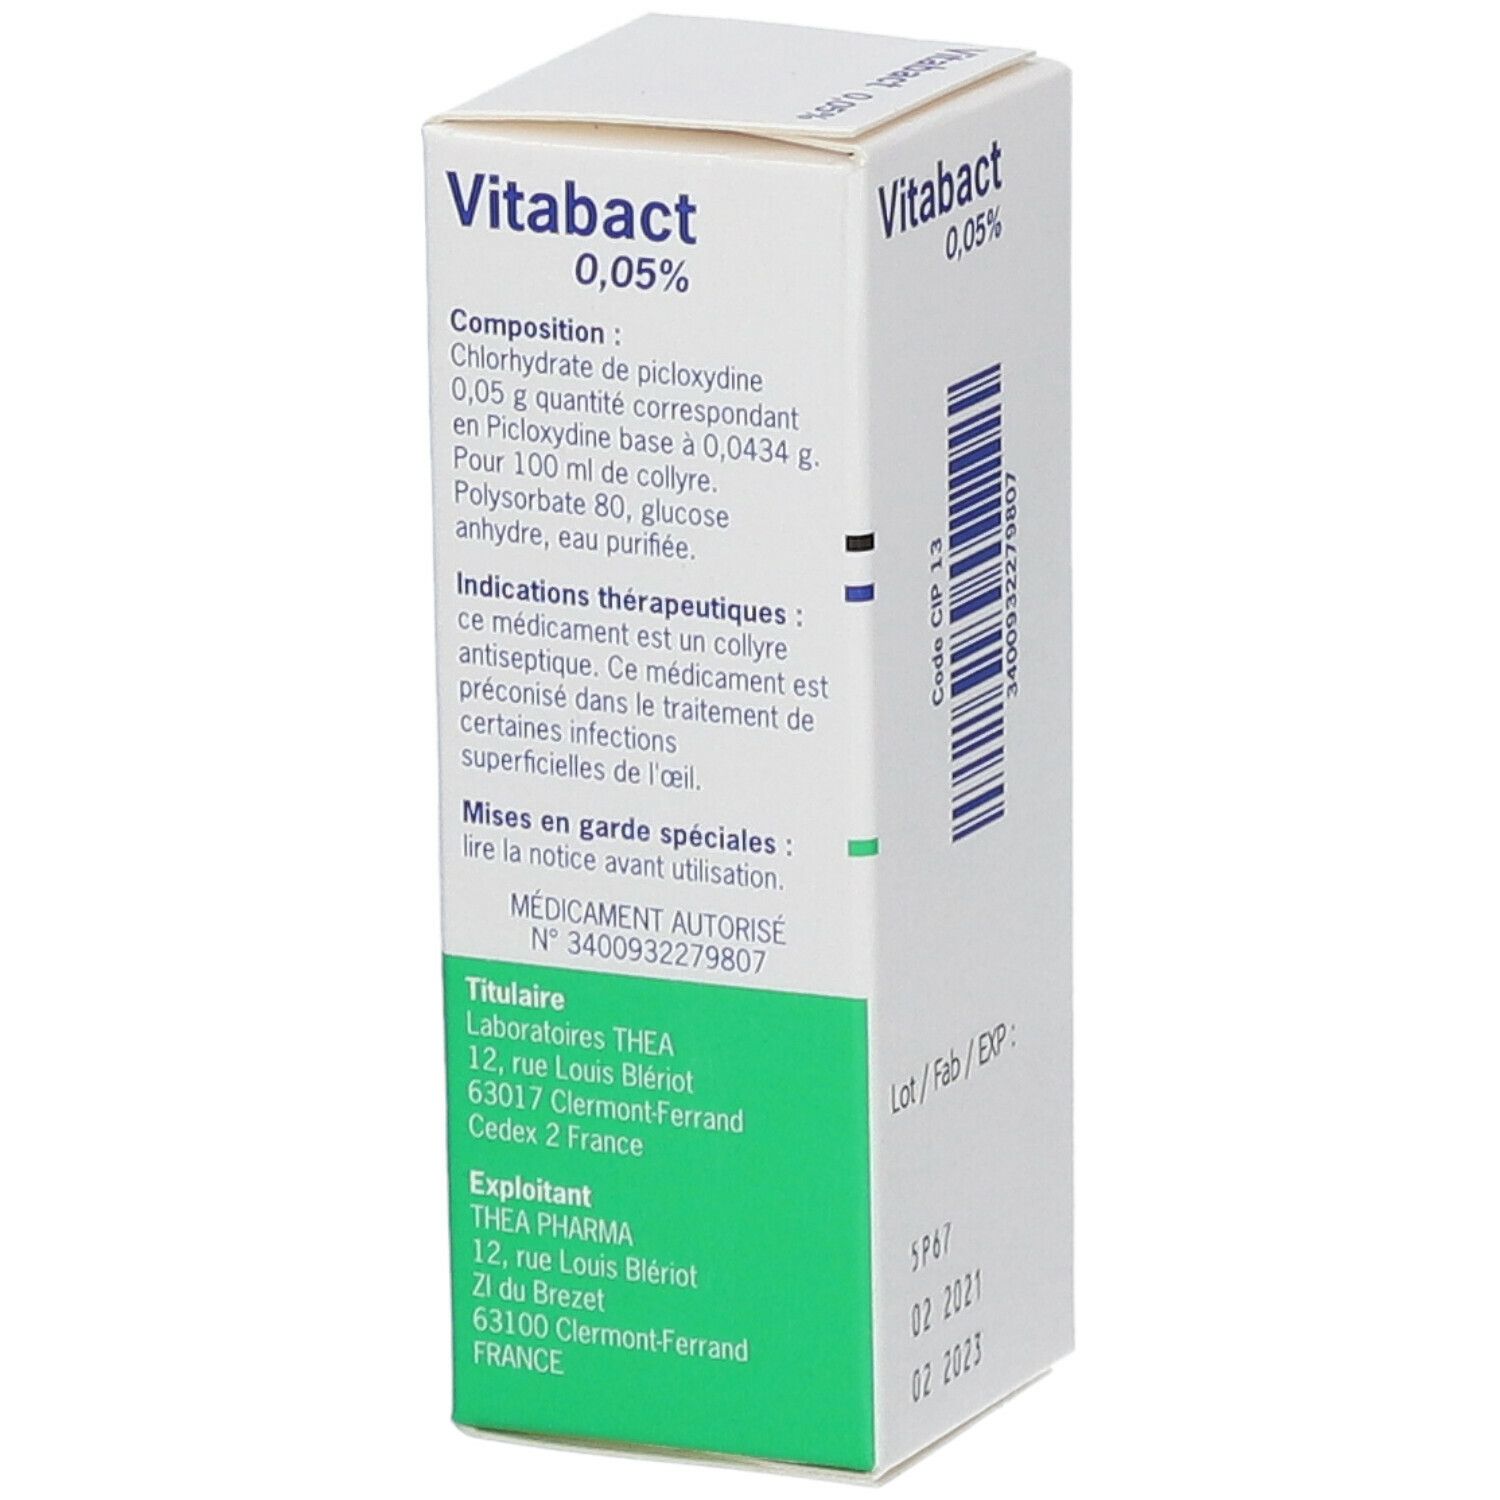 Vitabact 0,05% collyre, flacon de 10ml